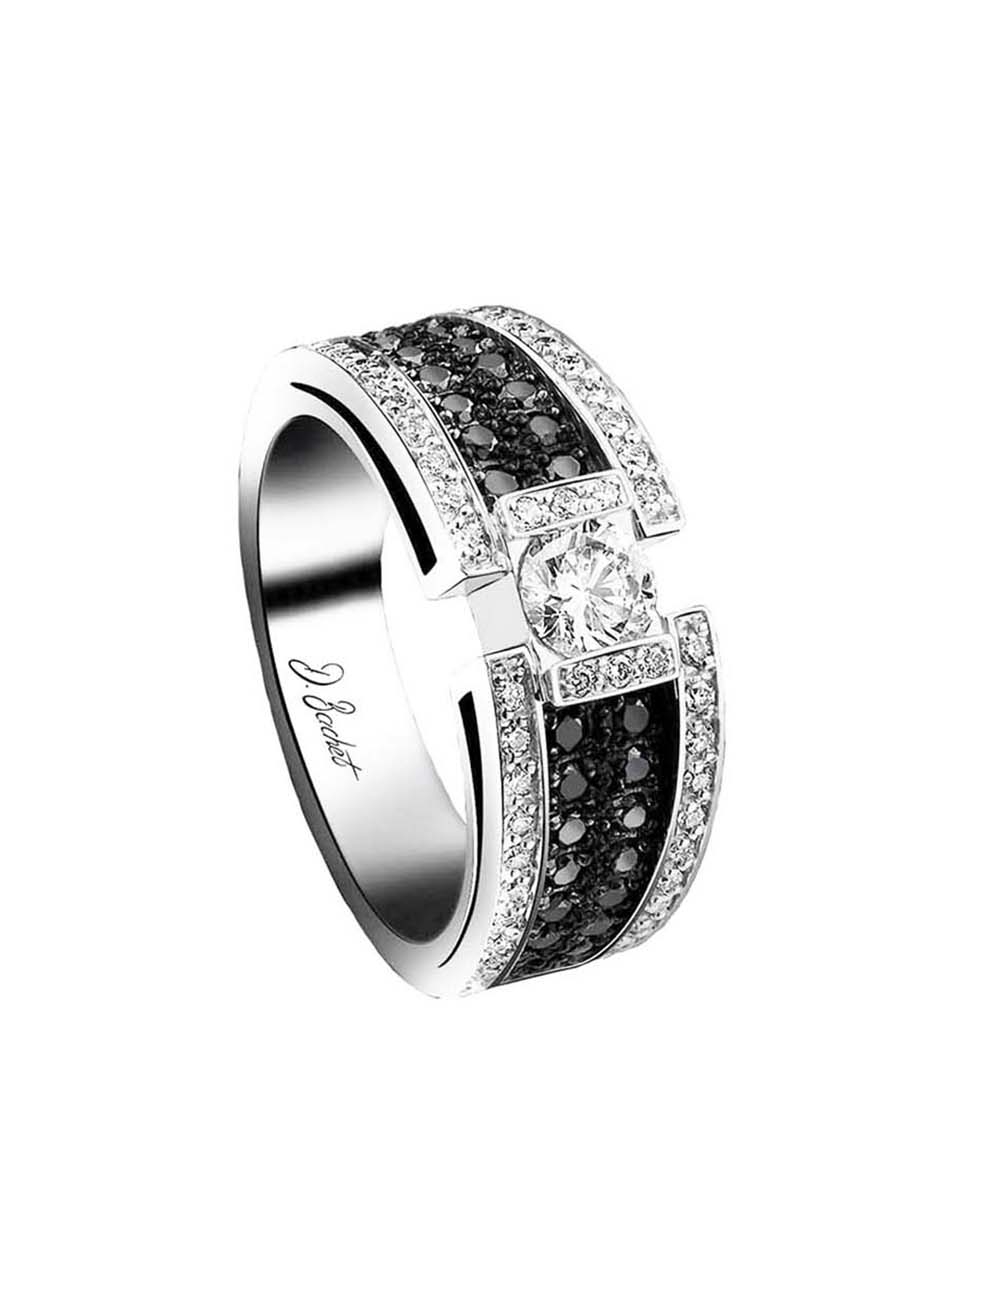 Bague luxe femme sertie d'un diamant blanc de 0.50 carat et un pavage de diamants blancs et noirs